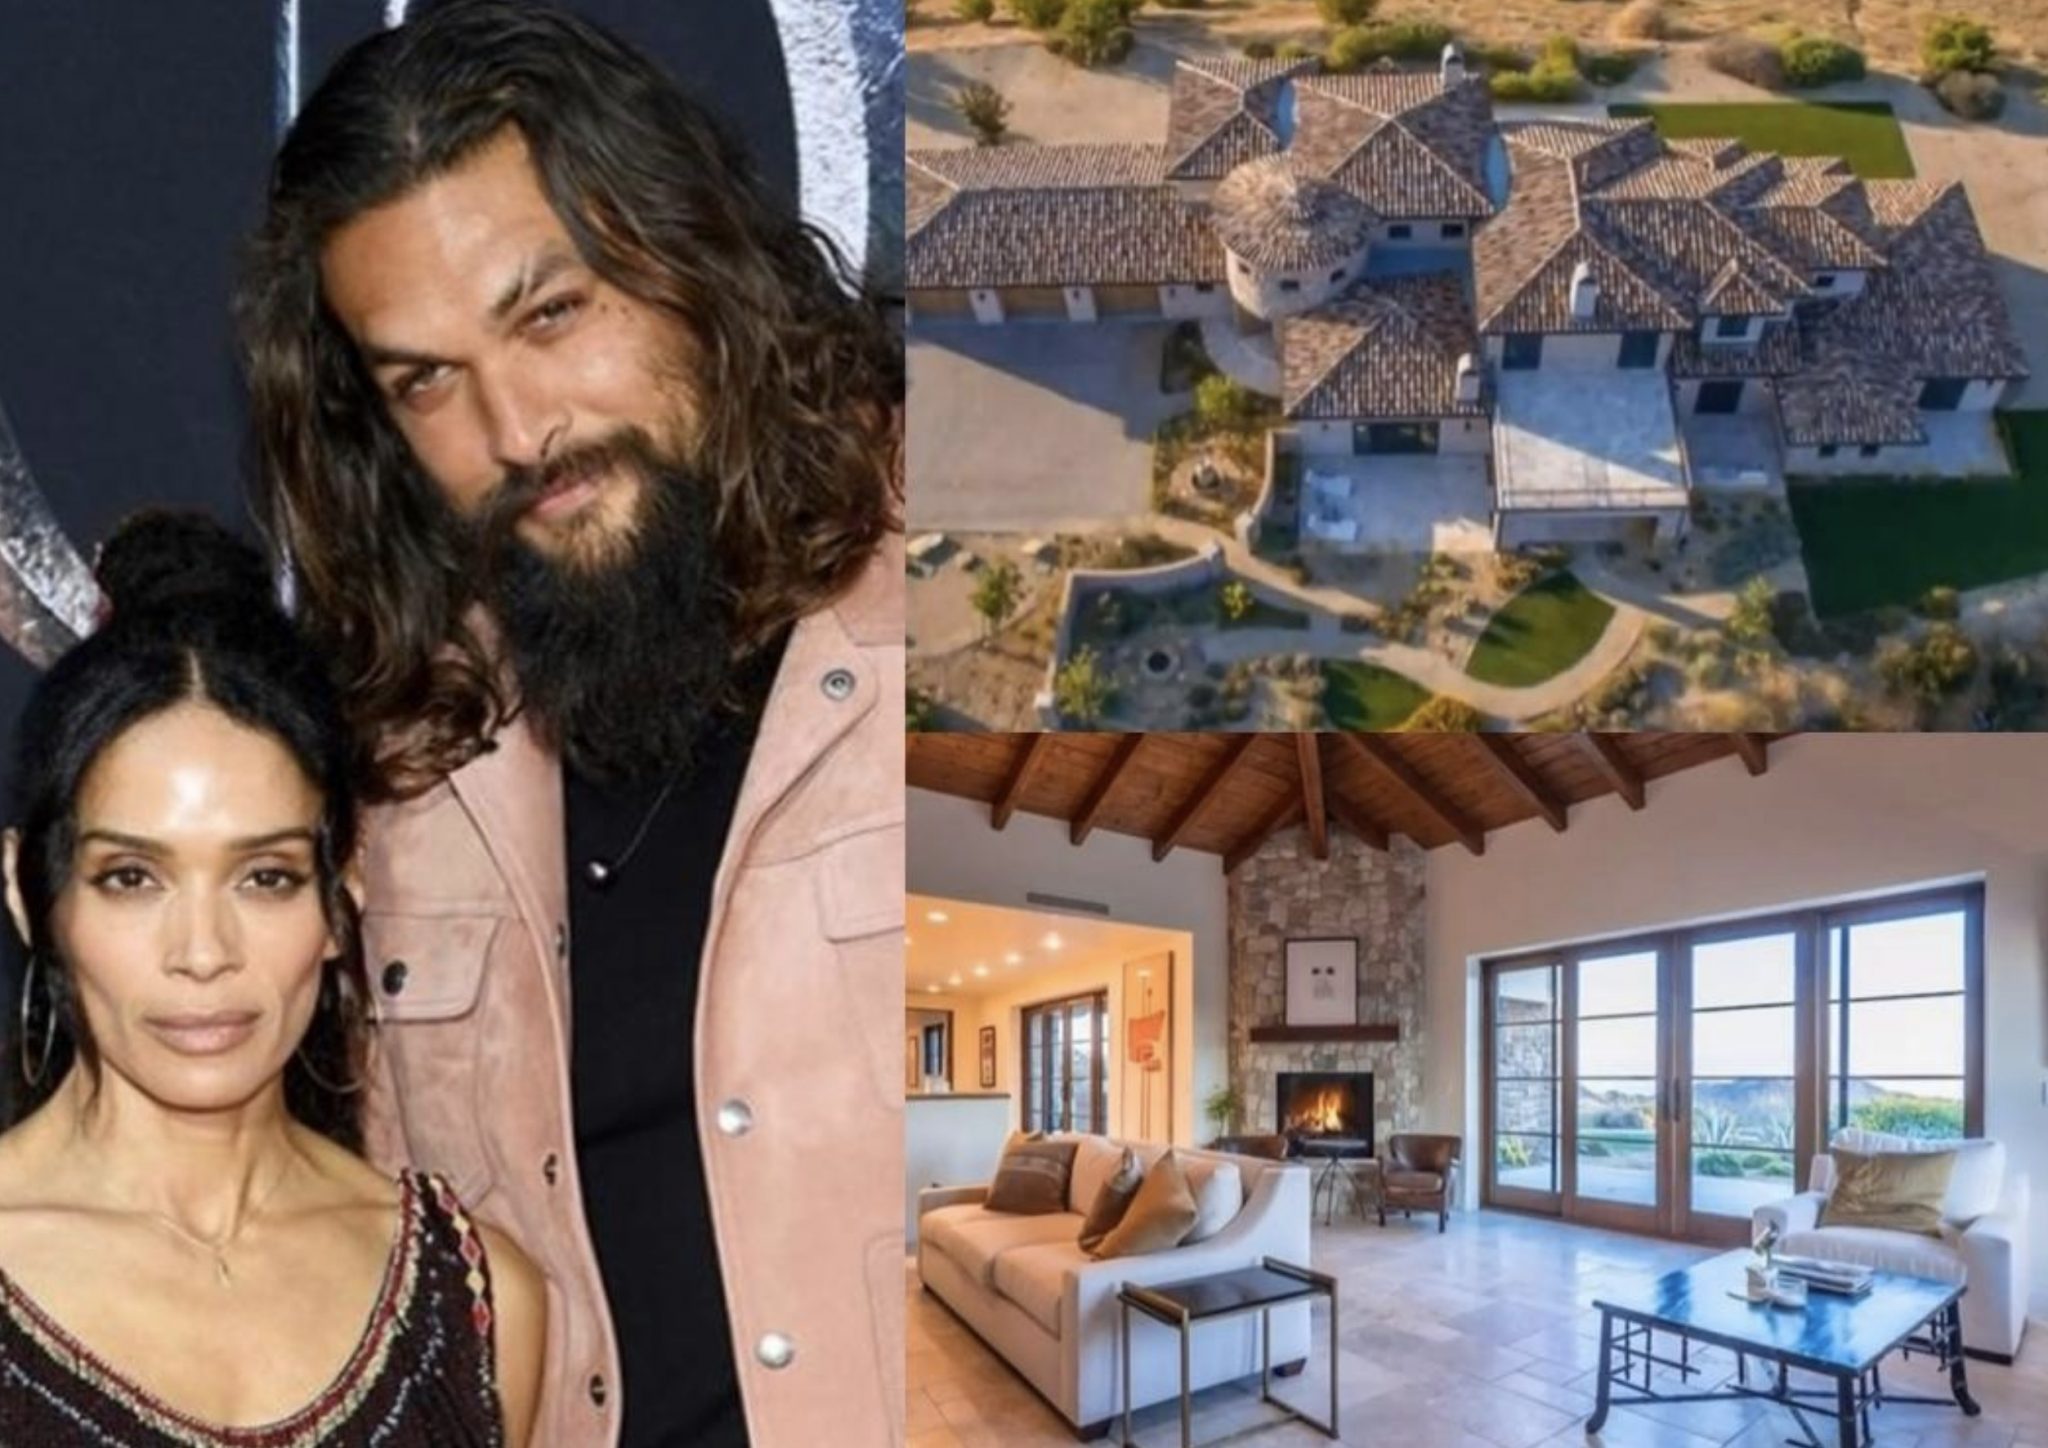 Lisa Bonet & Jason Momoa’s Home In California Valued At $3.6 Million